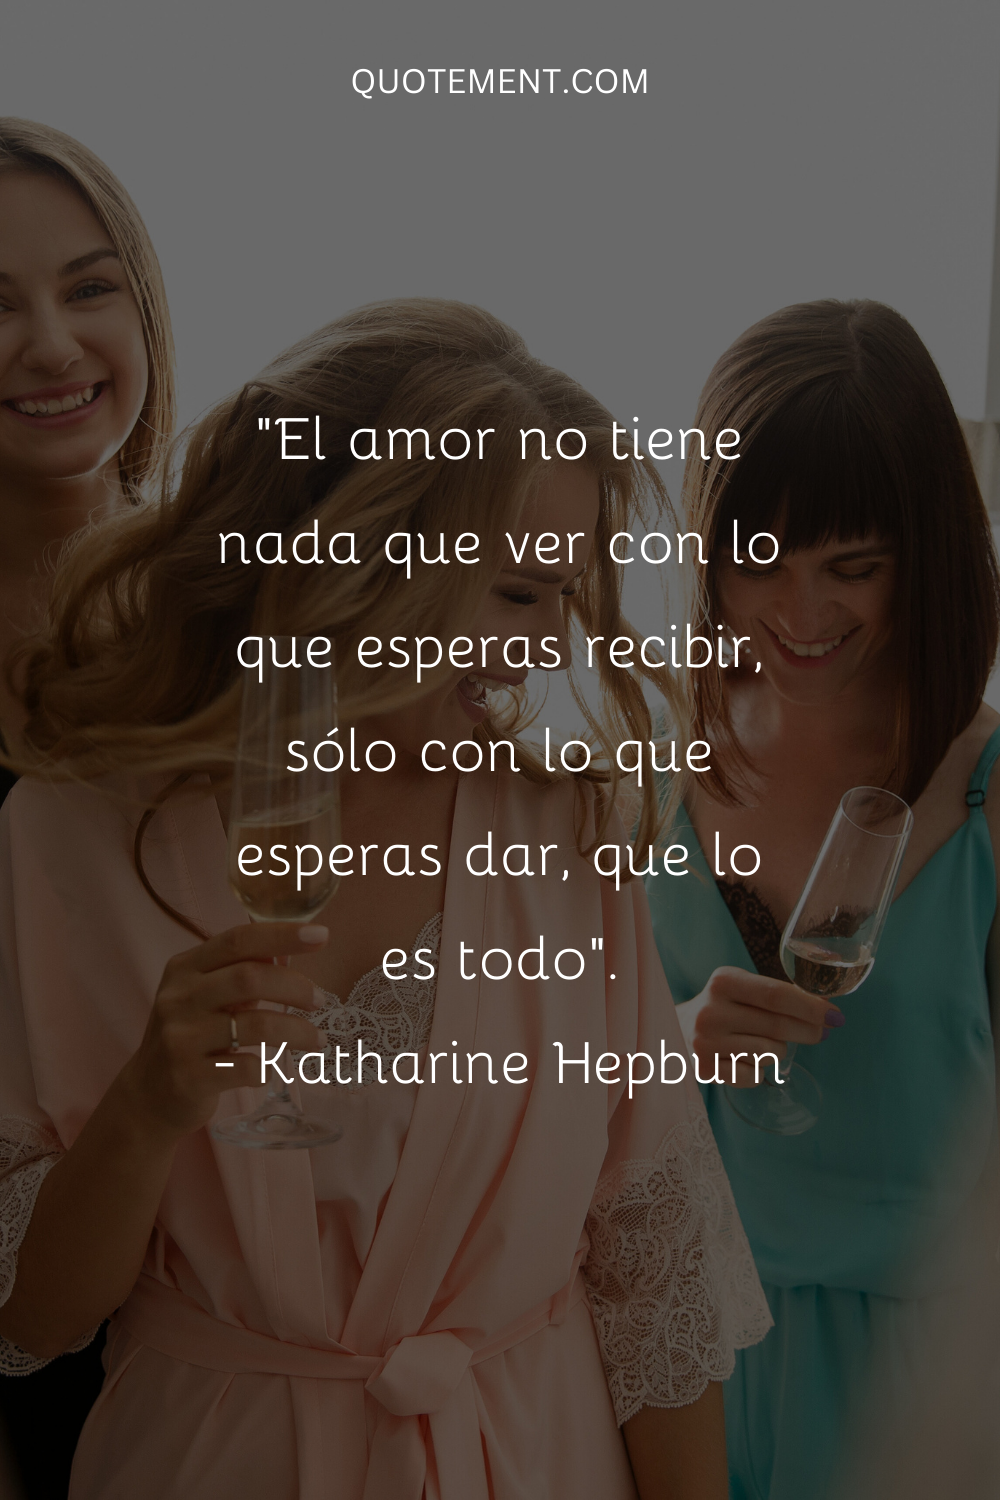 "El amor no tiene nada que ver con lo que esperas recibir, sólo con lo que esperas dar, que lo es todo". - Katharine Hepburn